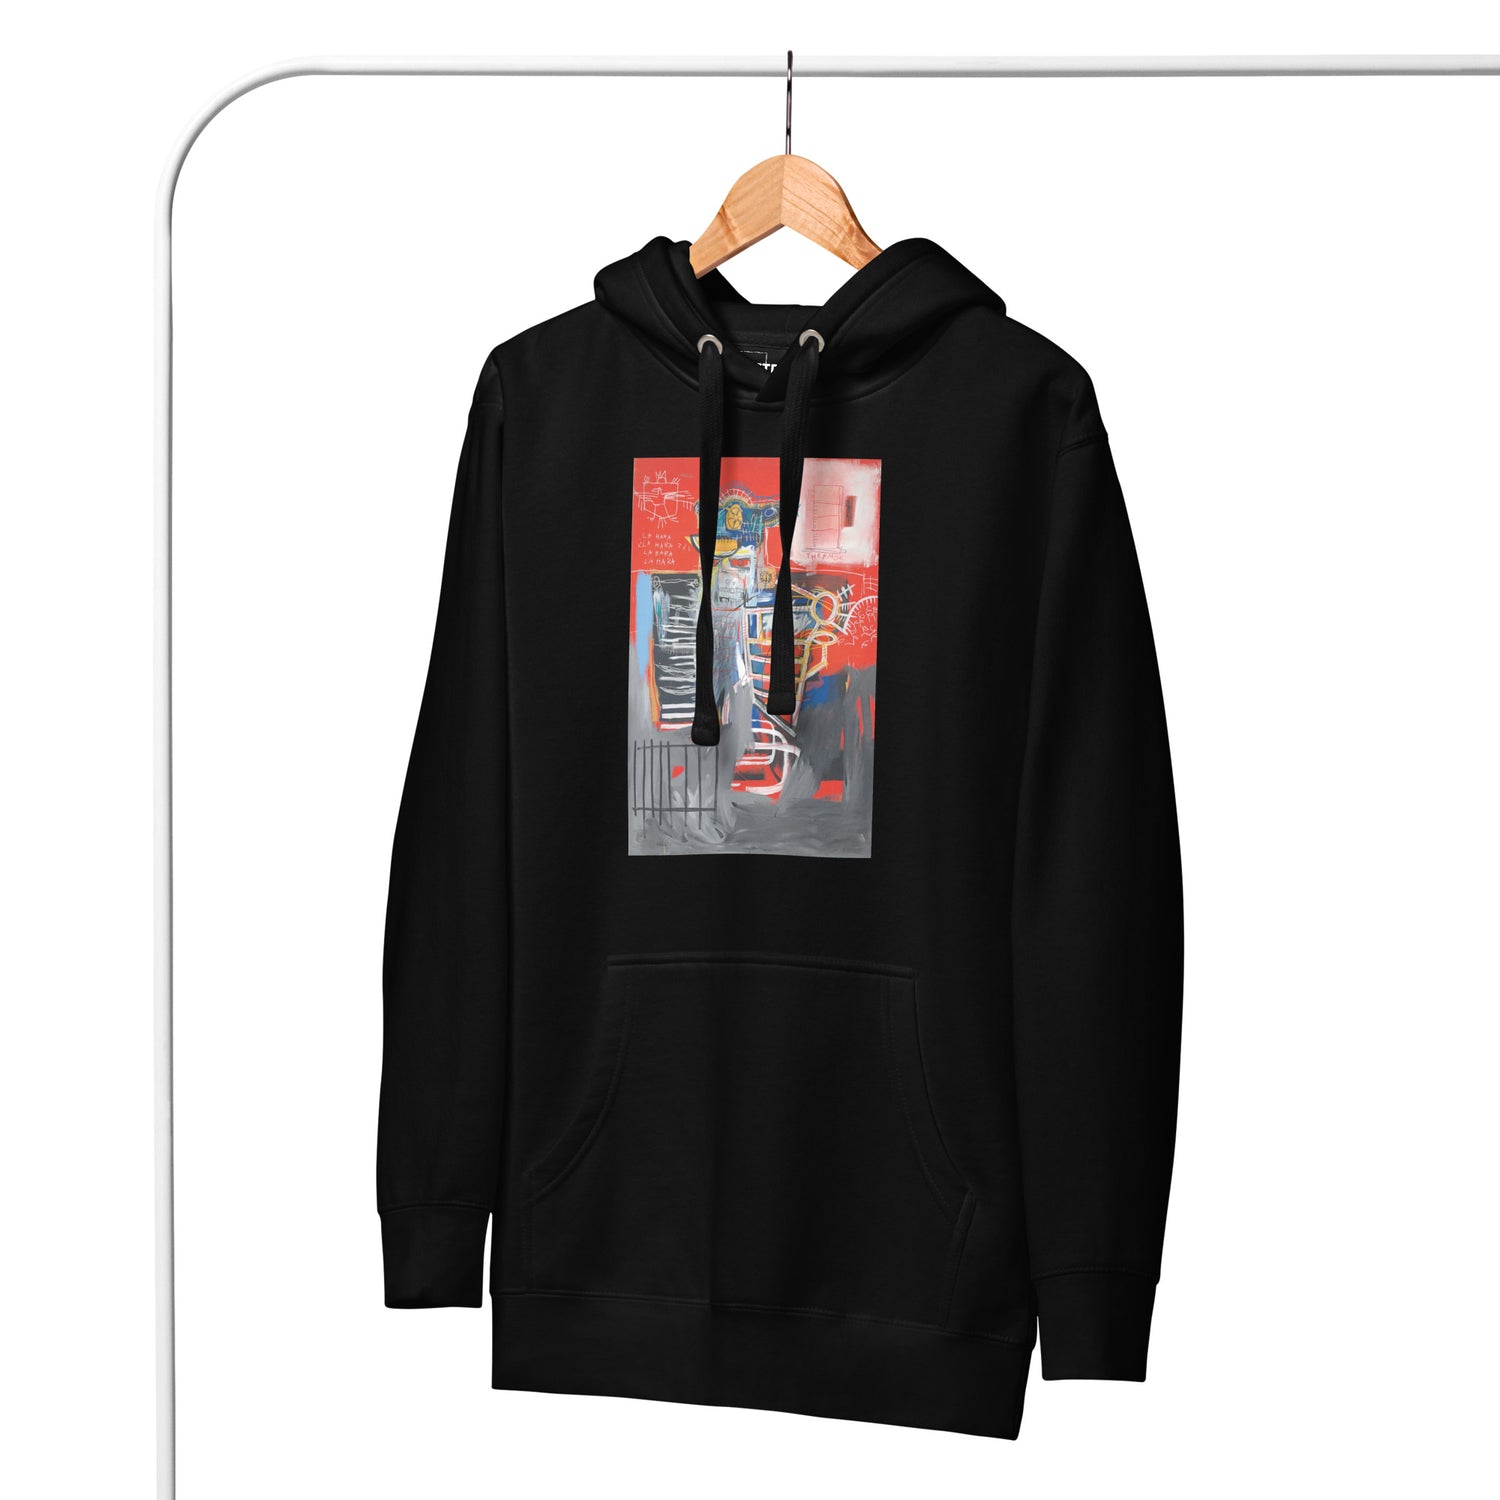 Jean-Michel Basquiat "La Hara" Artwork Printed Premium Streetwear Sweatshirt Hoodie Black